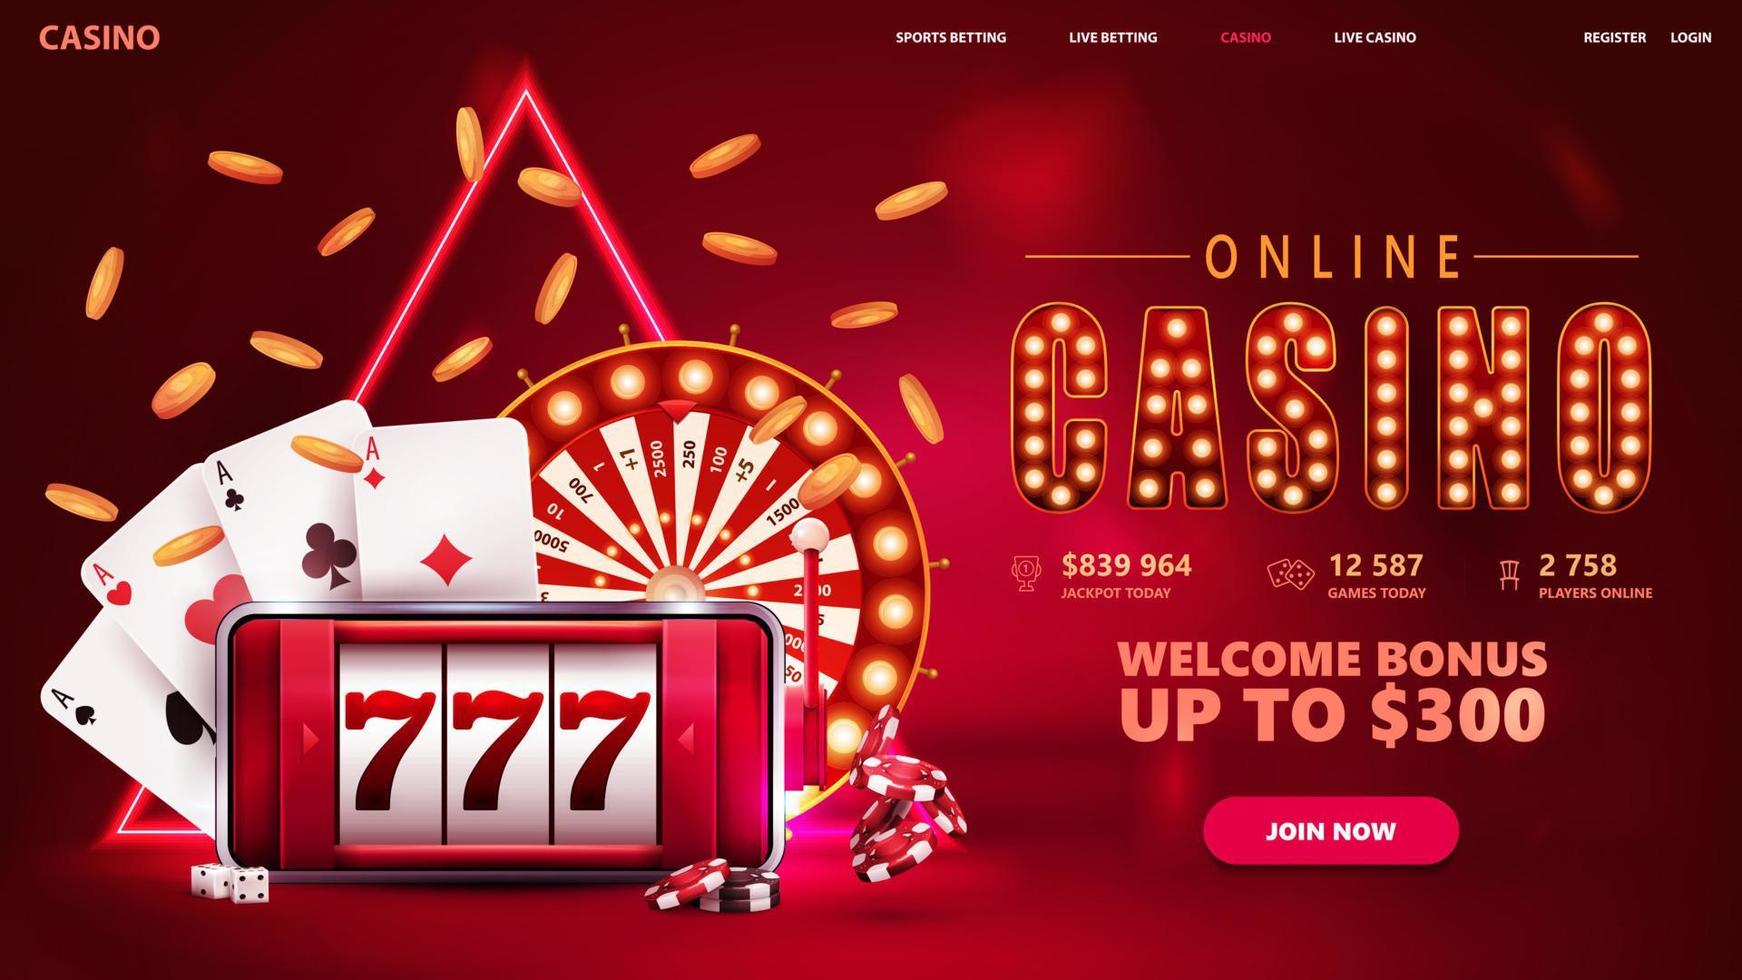 online-casino, rotes einladungsbanner für website mit knopf, smartphone mit spielautomat auf dem bildschirm, casino-radvermögen, pokerchips und spielkarten. vektor